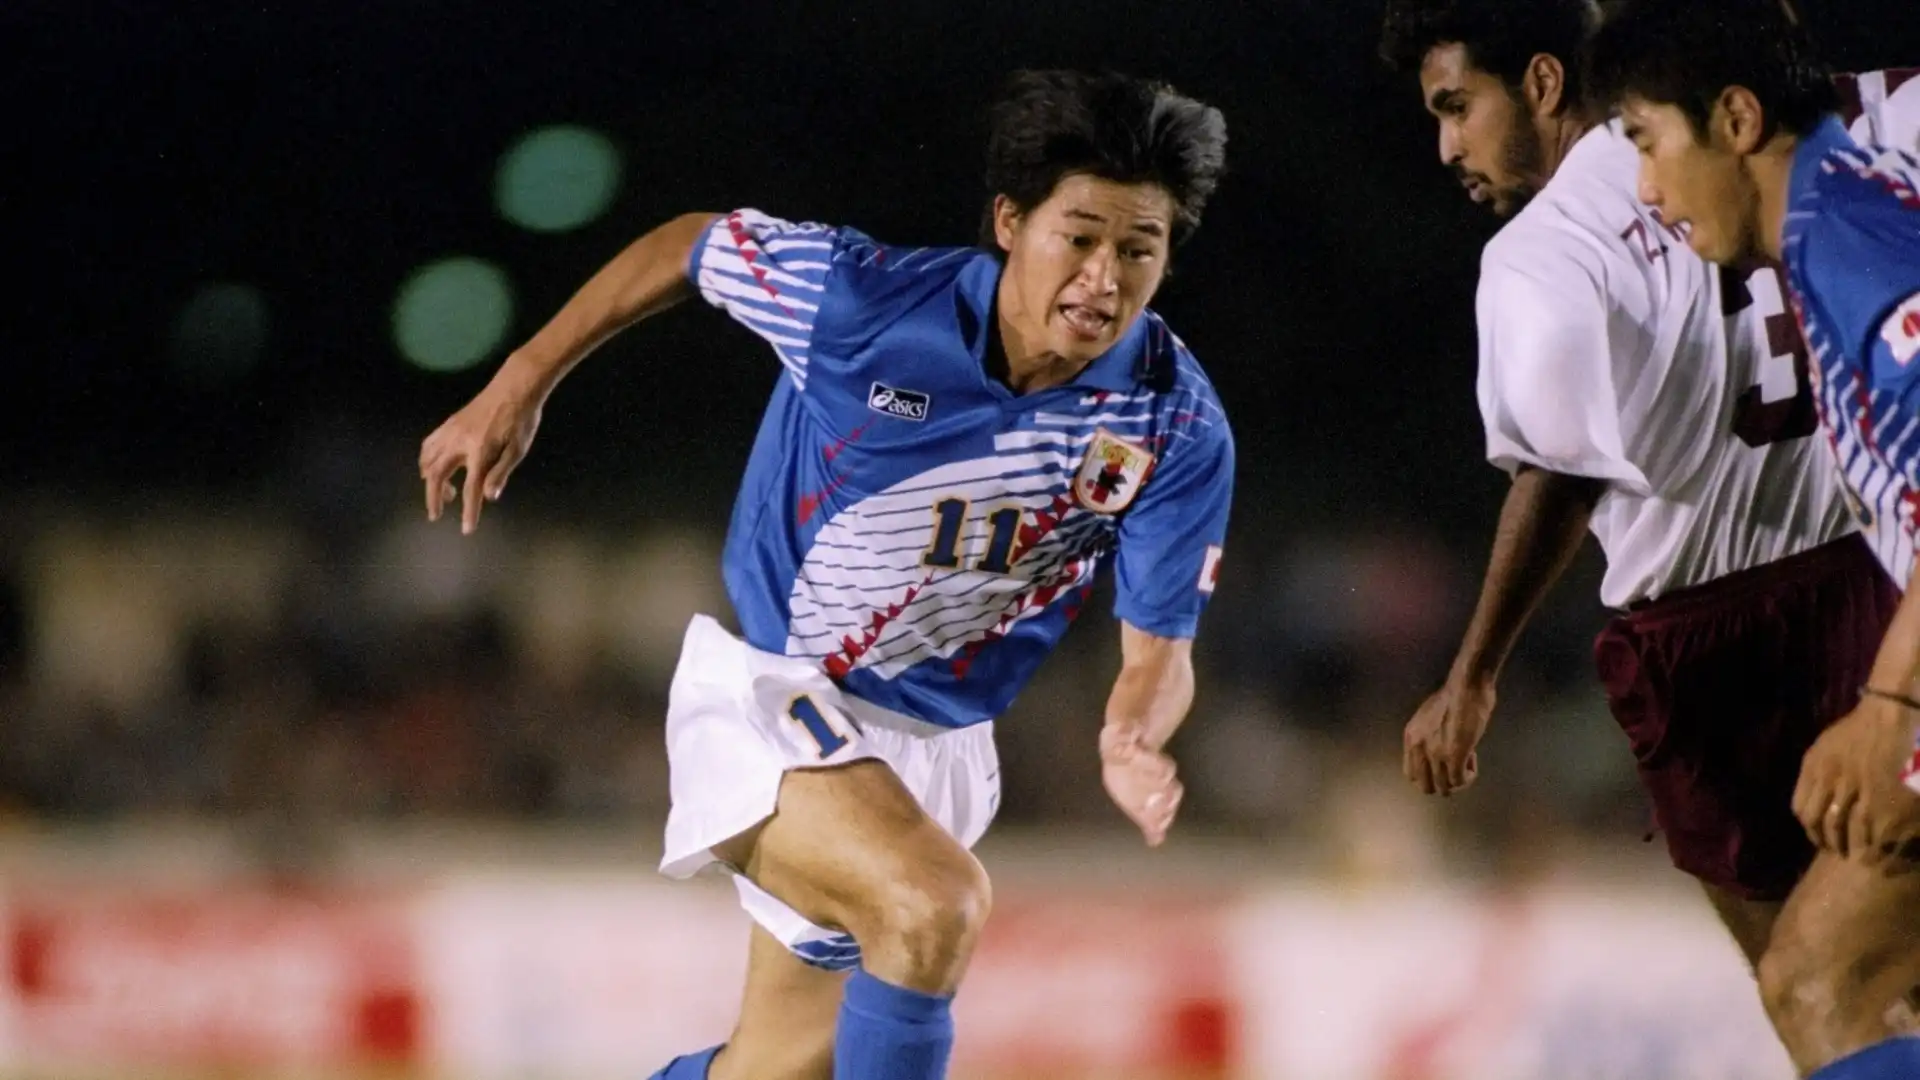 Kazuyoshi Miura (Attaccante): patrimonio netto stimato di 18 milioni di dollari. A 56 anni è il giocatore più anziano in attività nella storia del calcio.